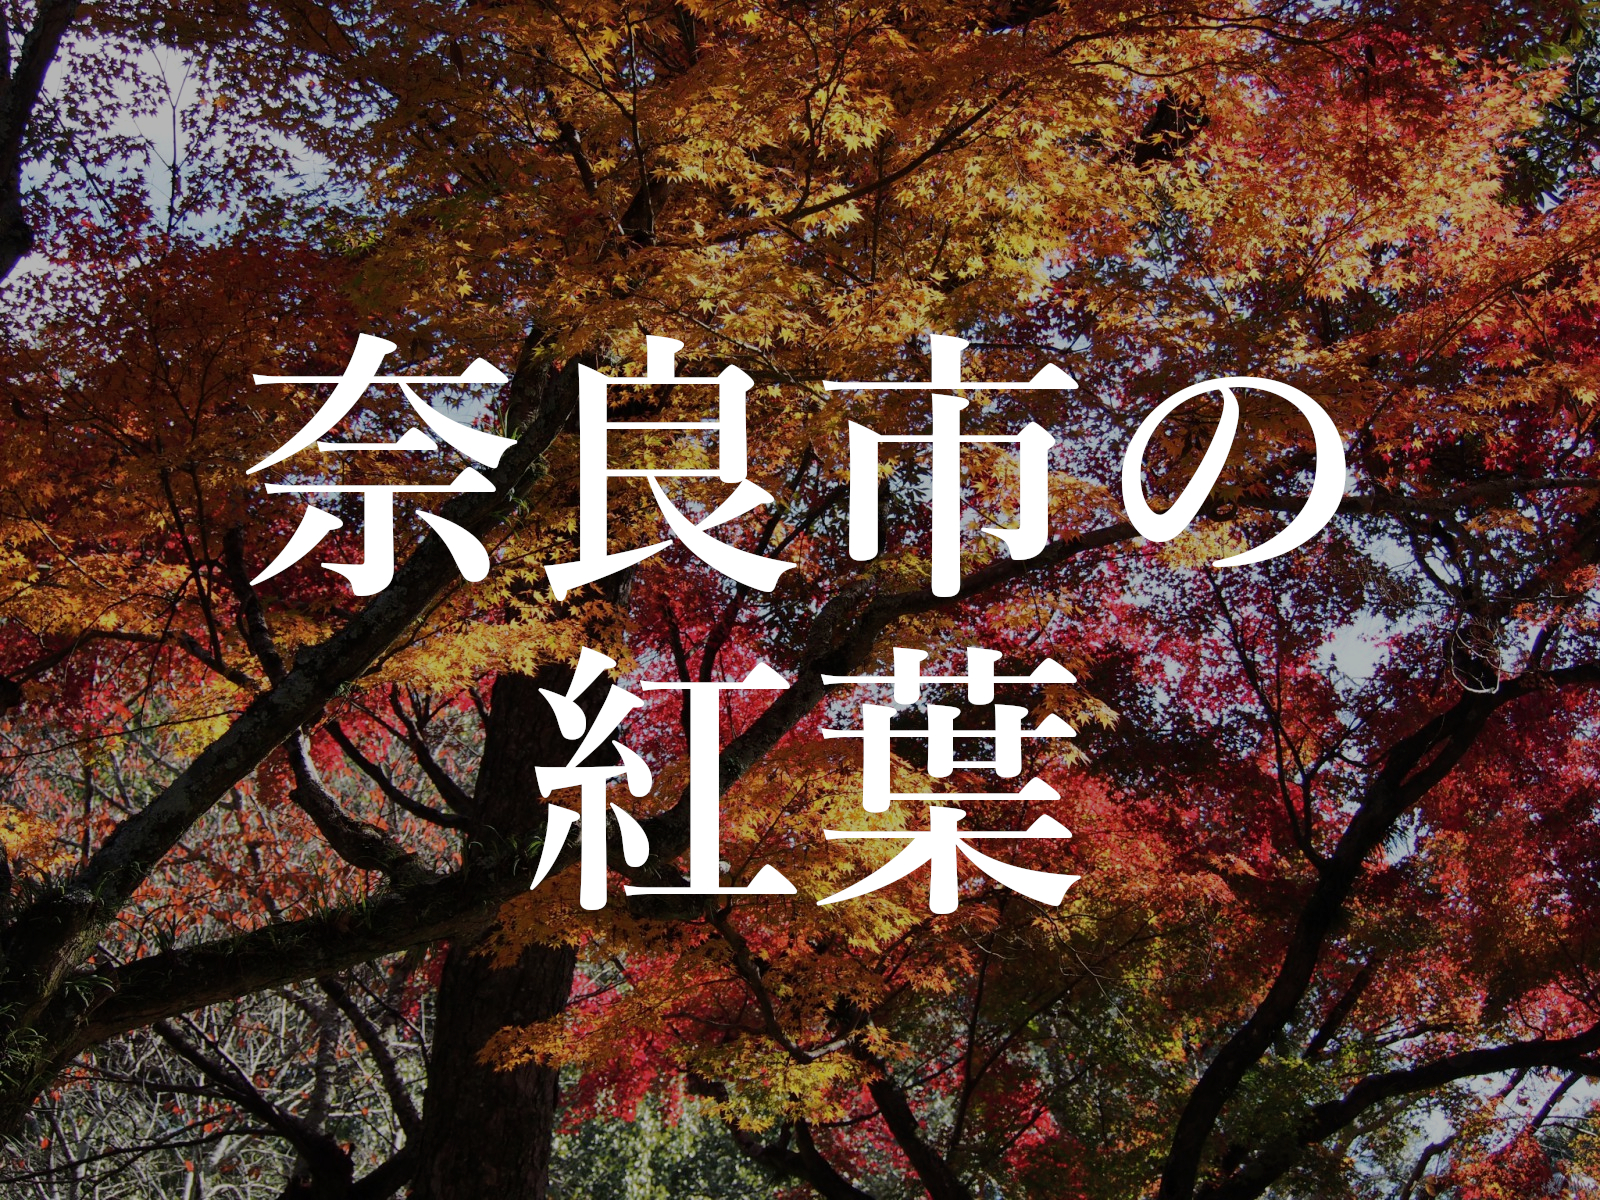 奈良市内の 紅葉の名所 みどころ 一覧 有名スポットから穴場まで 奈良まちあるき風景紀行